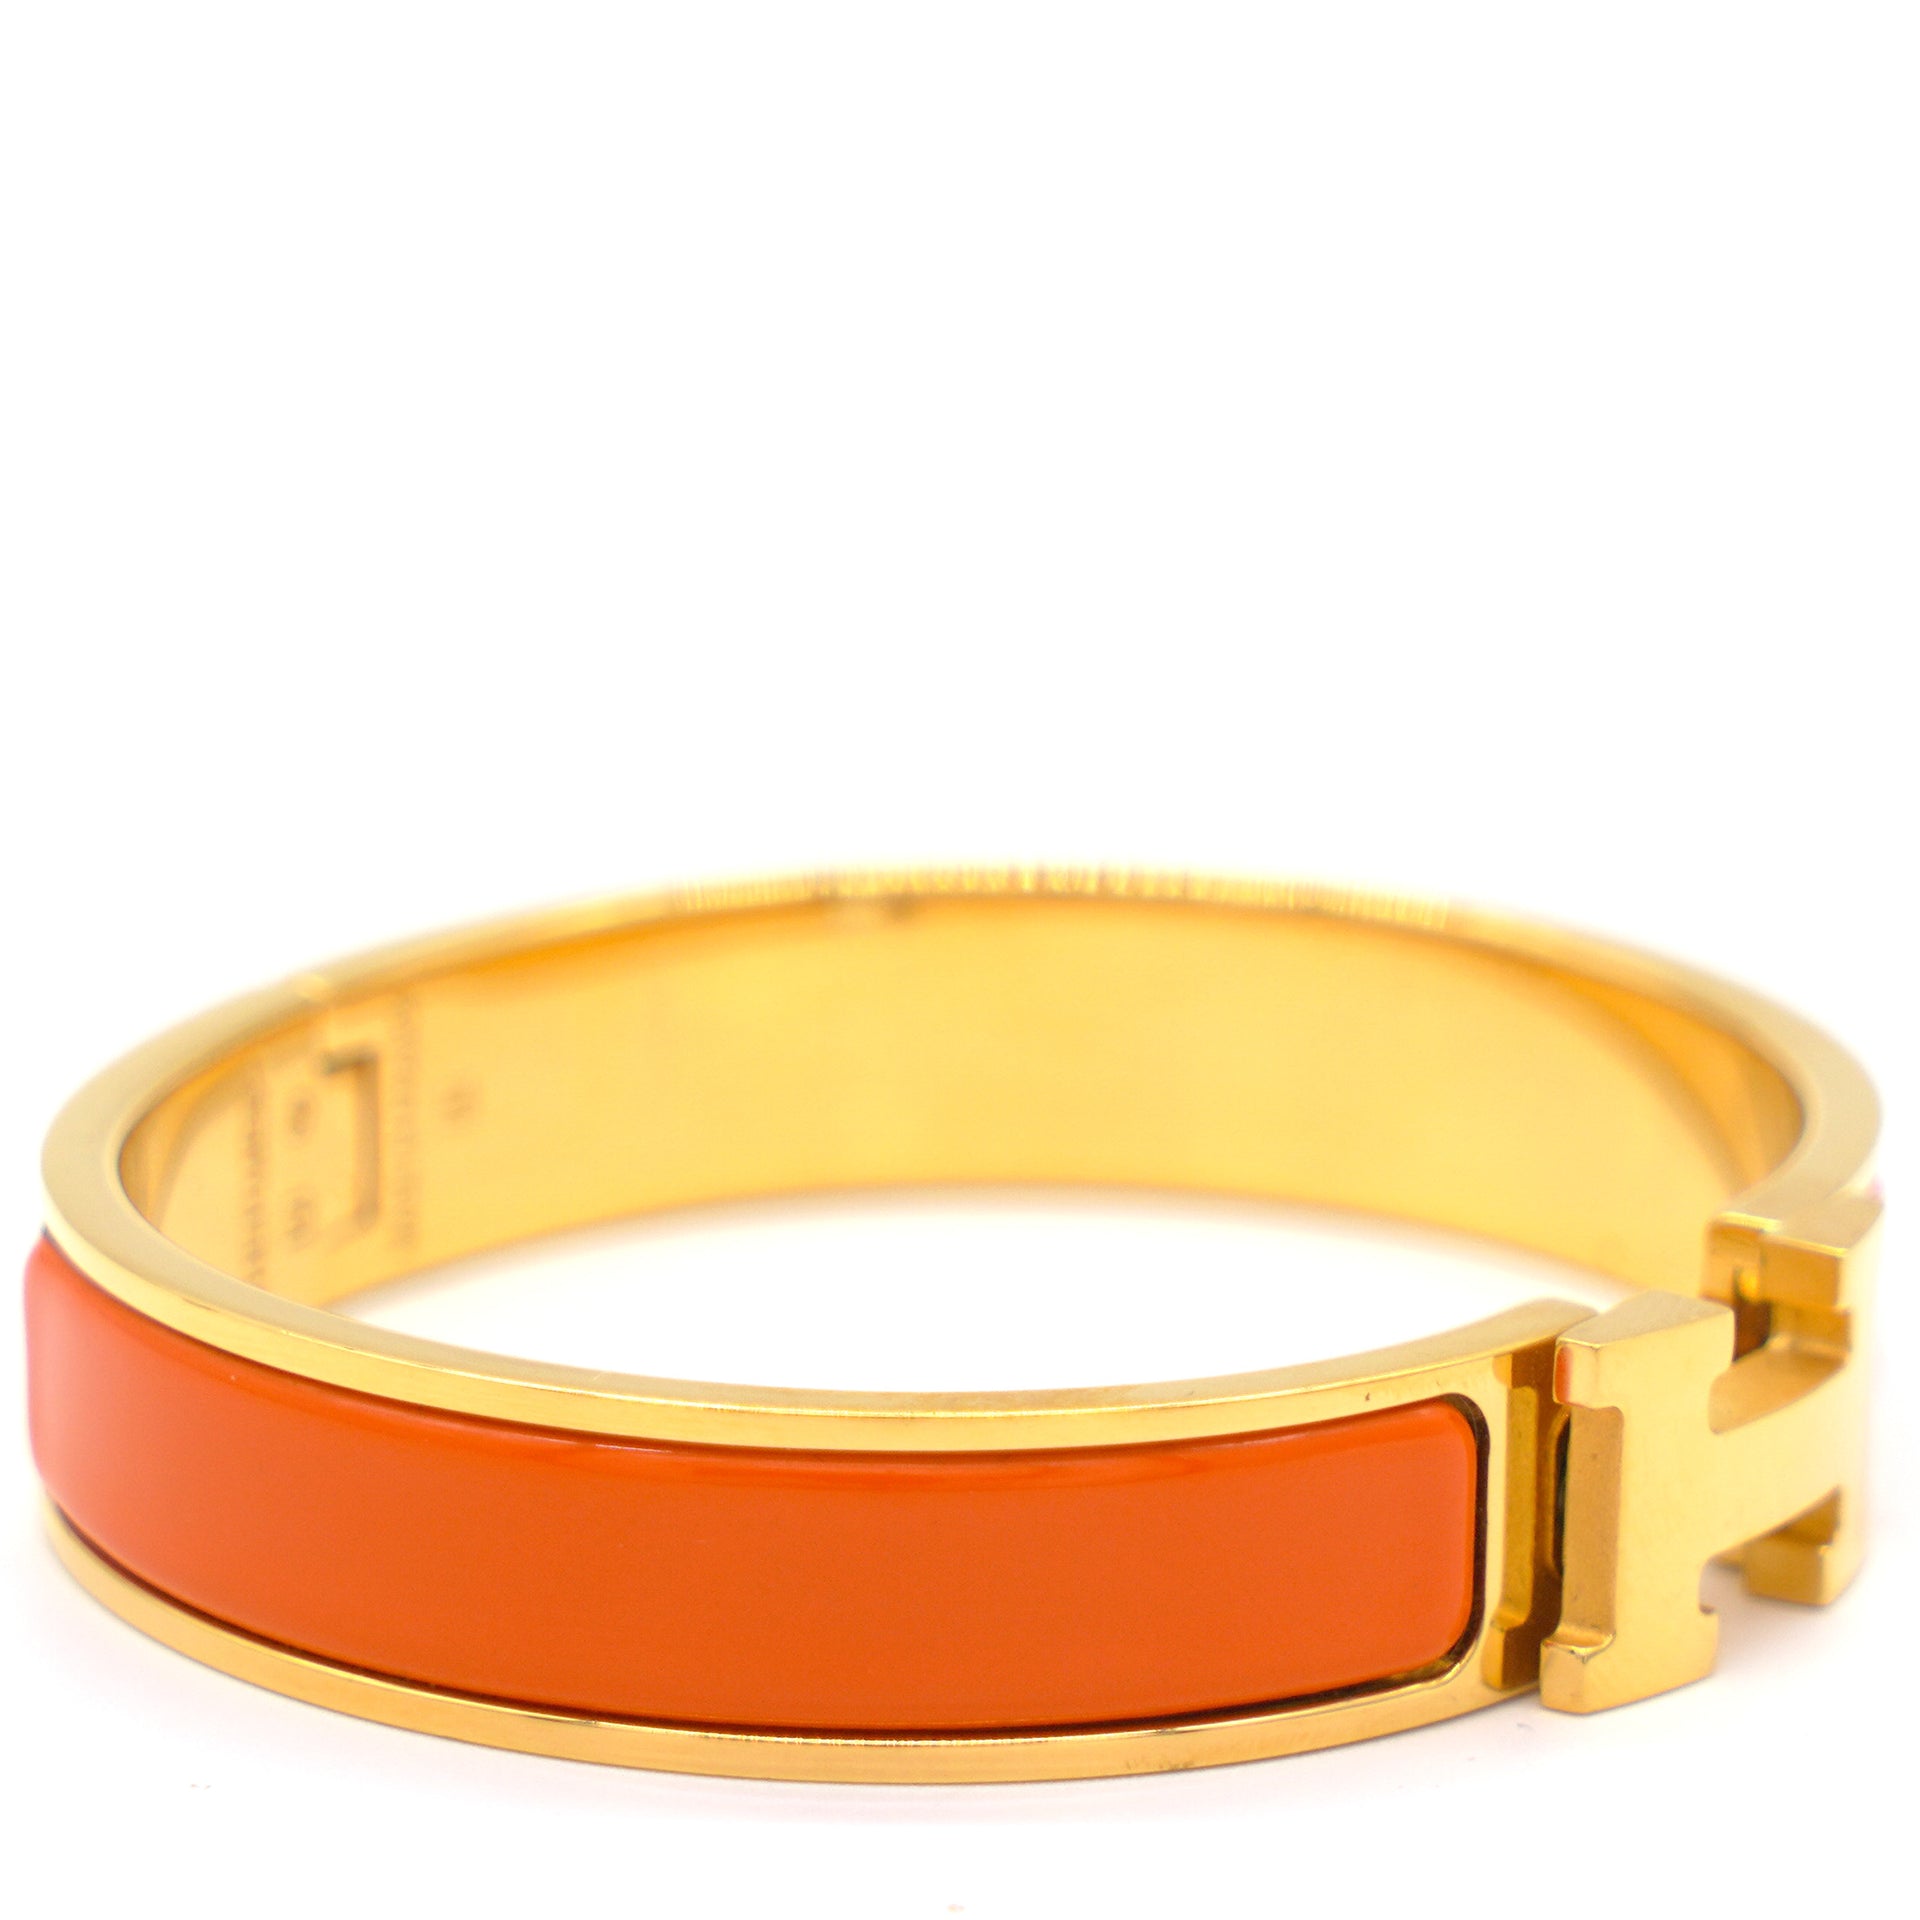 Orange Bracelet - Buy Orange Bracelet online in India